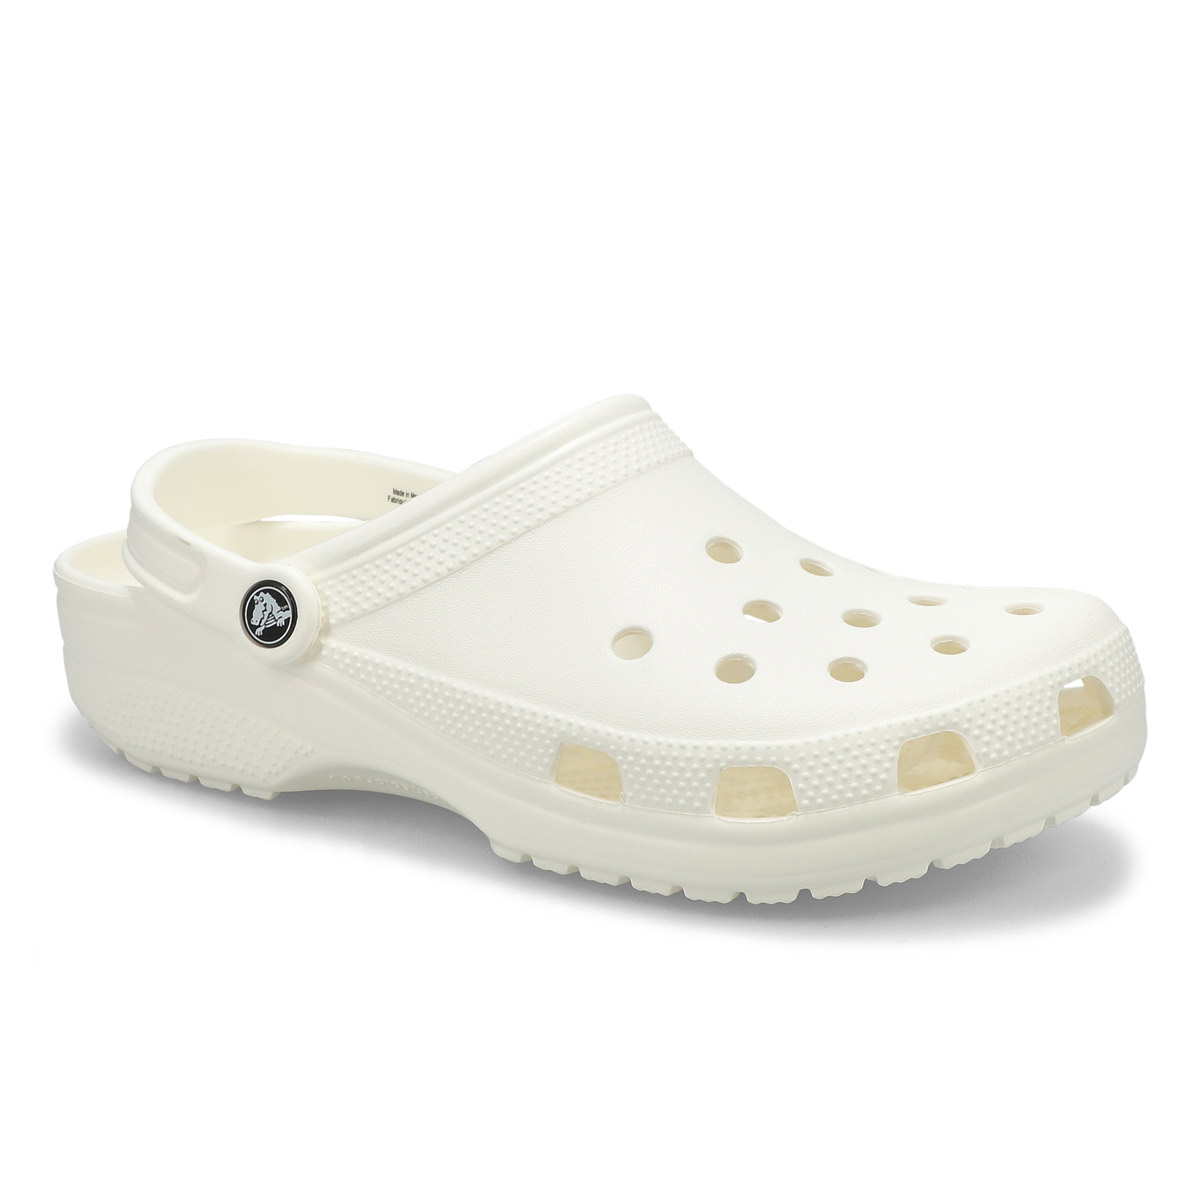 Crocs Men's CLASSIC white EVA comfort 